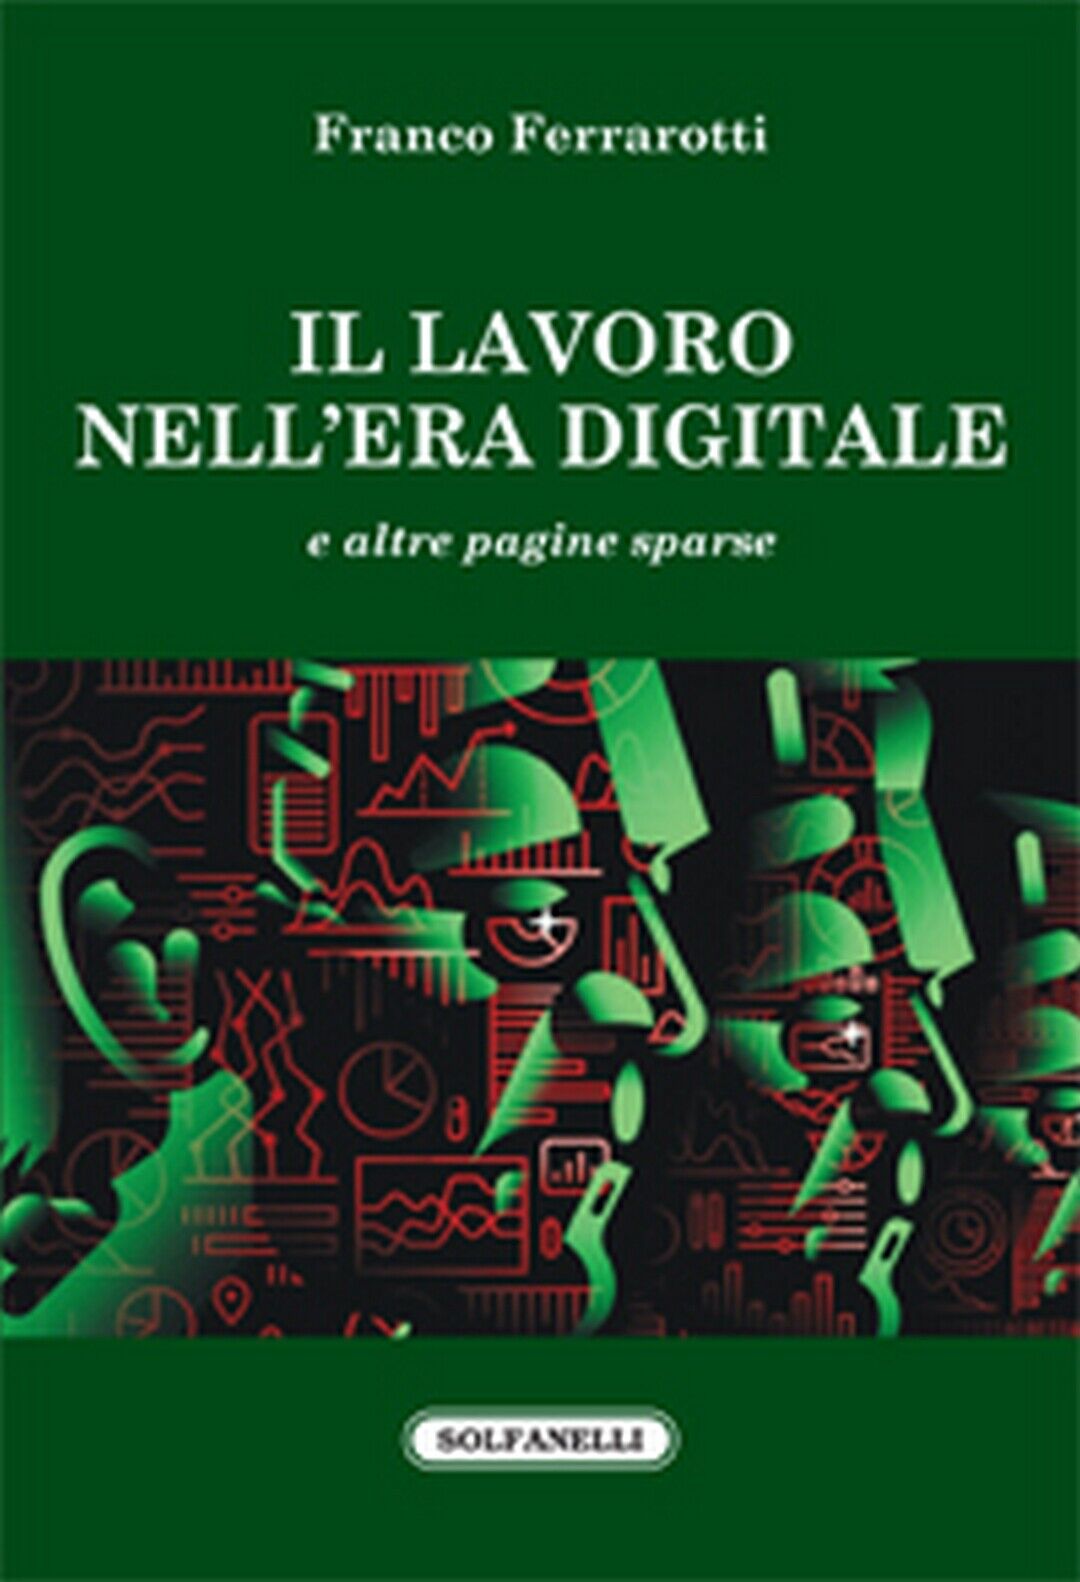 IL LAVORO NELL'ERA DIGITALE  di Franco Ferrarotti,  Solfanelli Edizioni